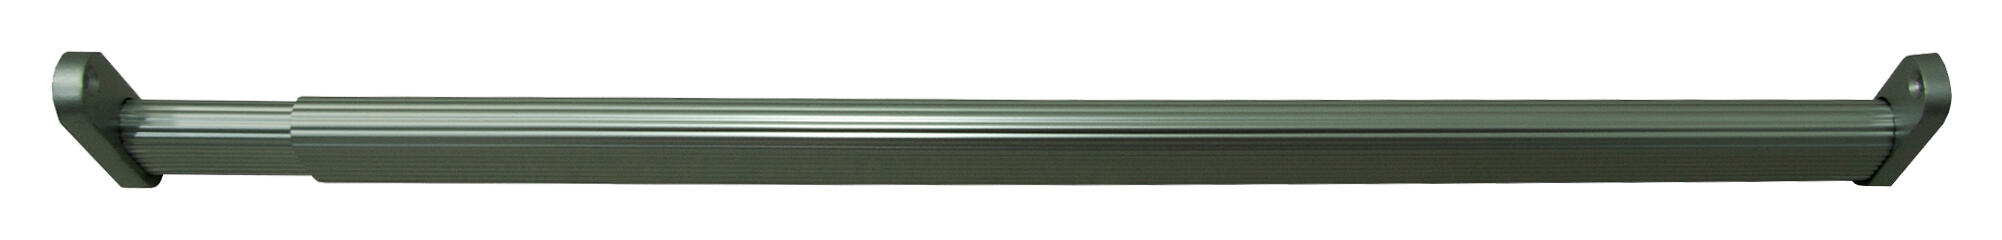 Kit barra de ropero extensible y soportes ovalada de 0,4 m de largo y 30x15 mm ø